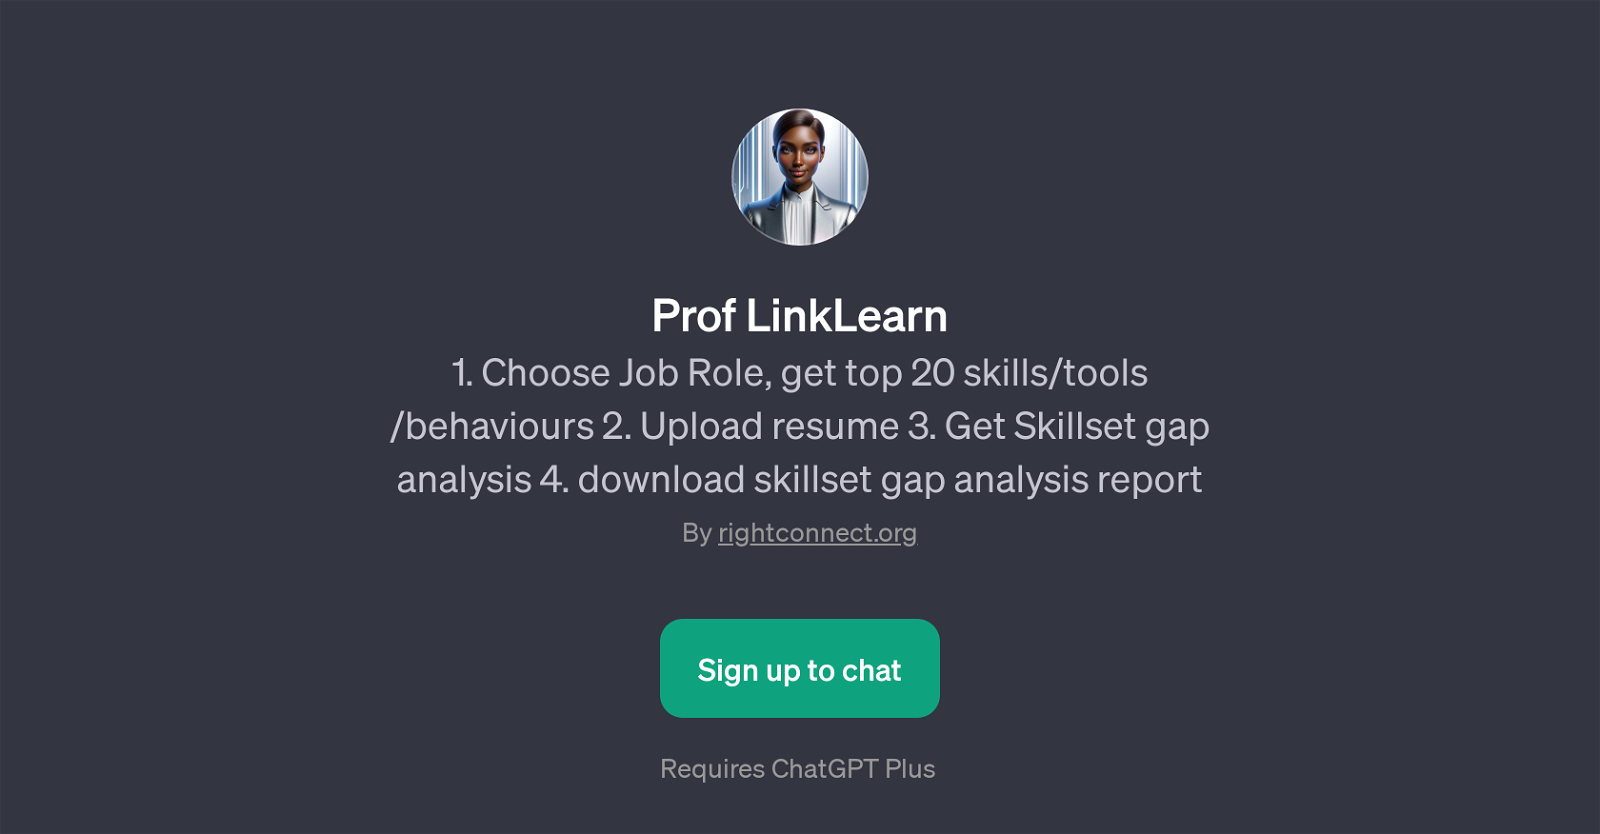 Prof LinkLearn website